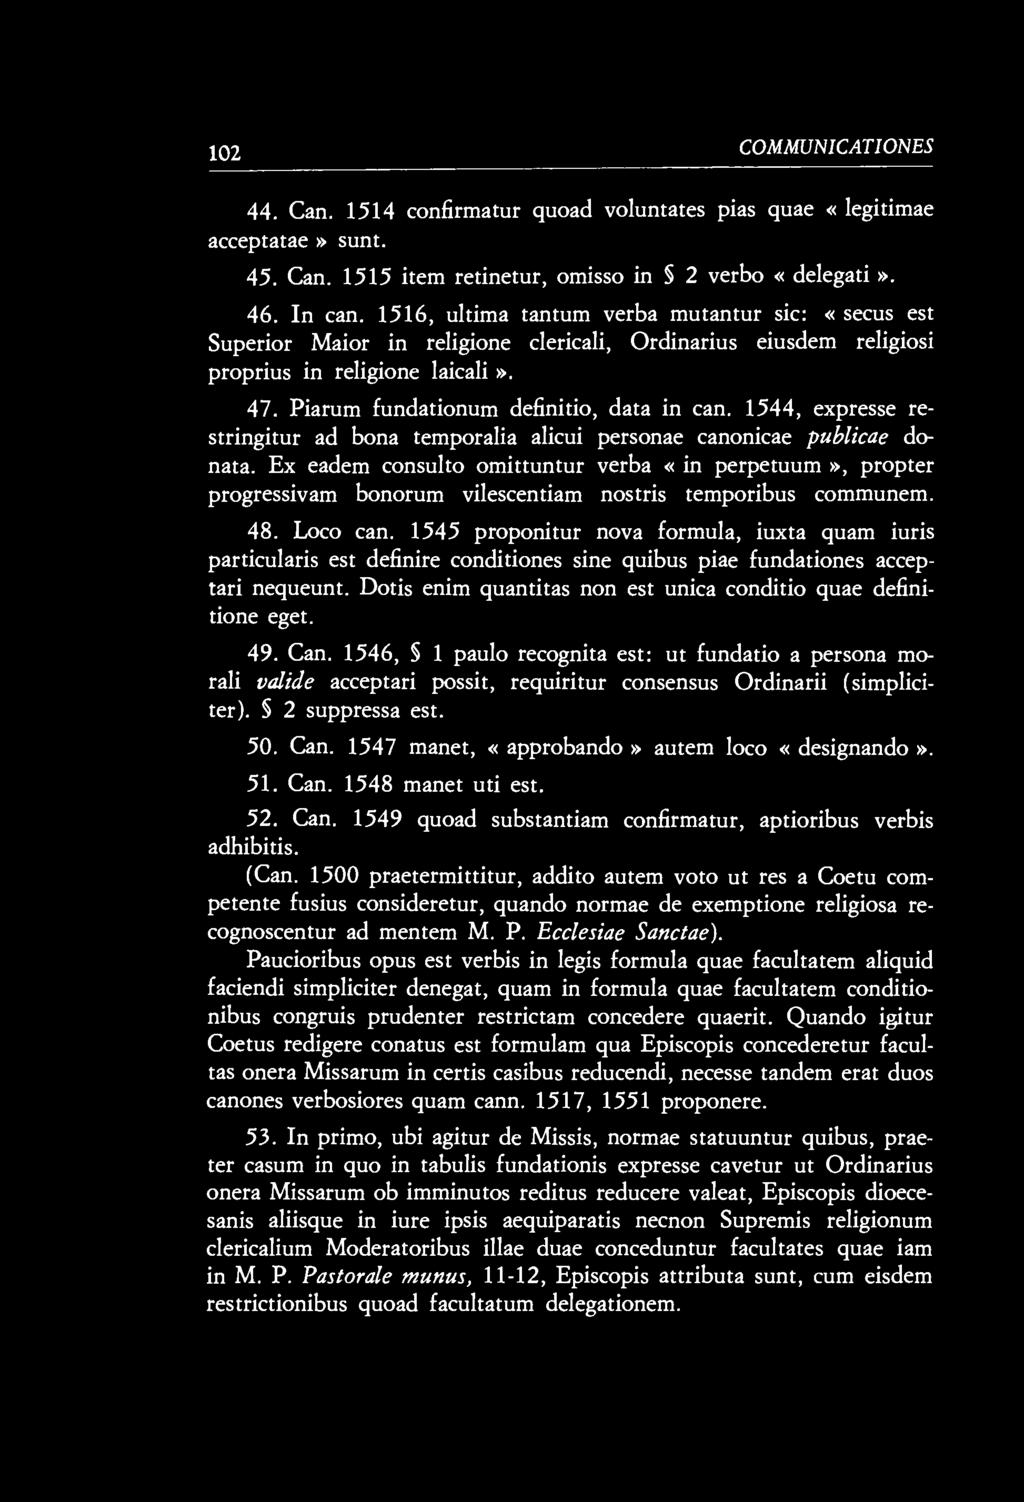 1544, expresse restringitur ad bona temporalia alicui personae canonicae publicae donata.